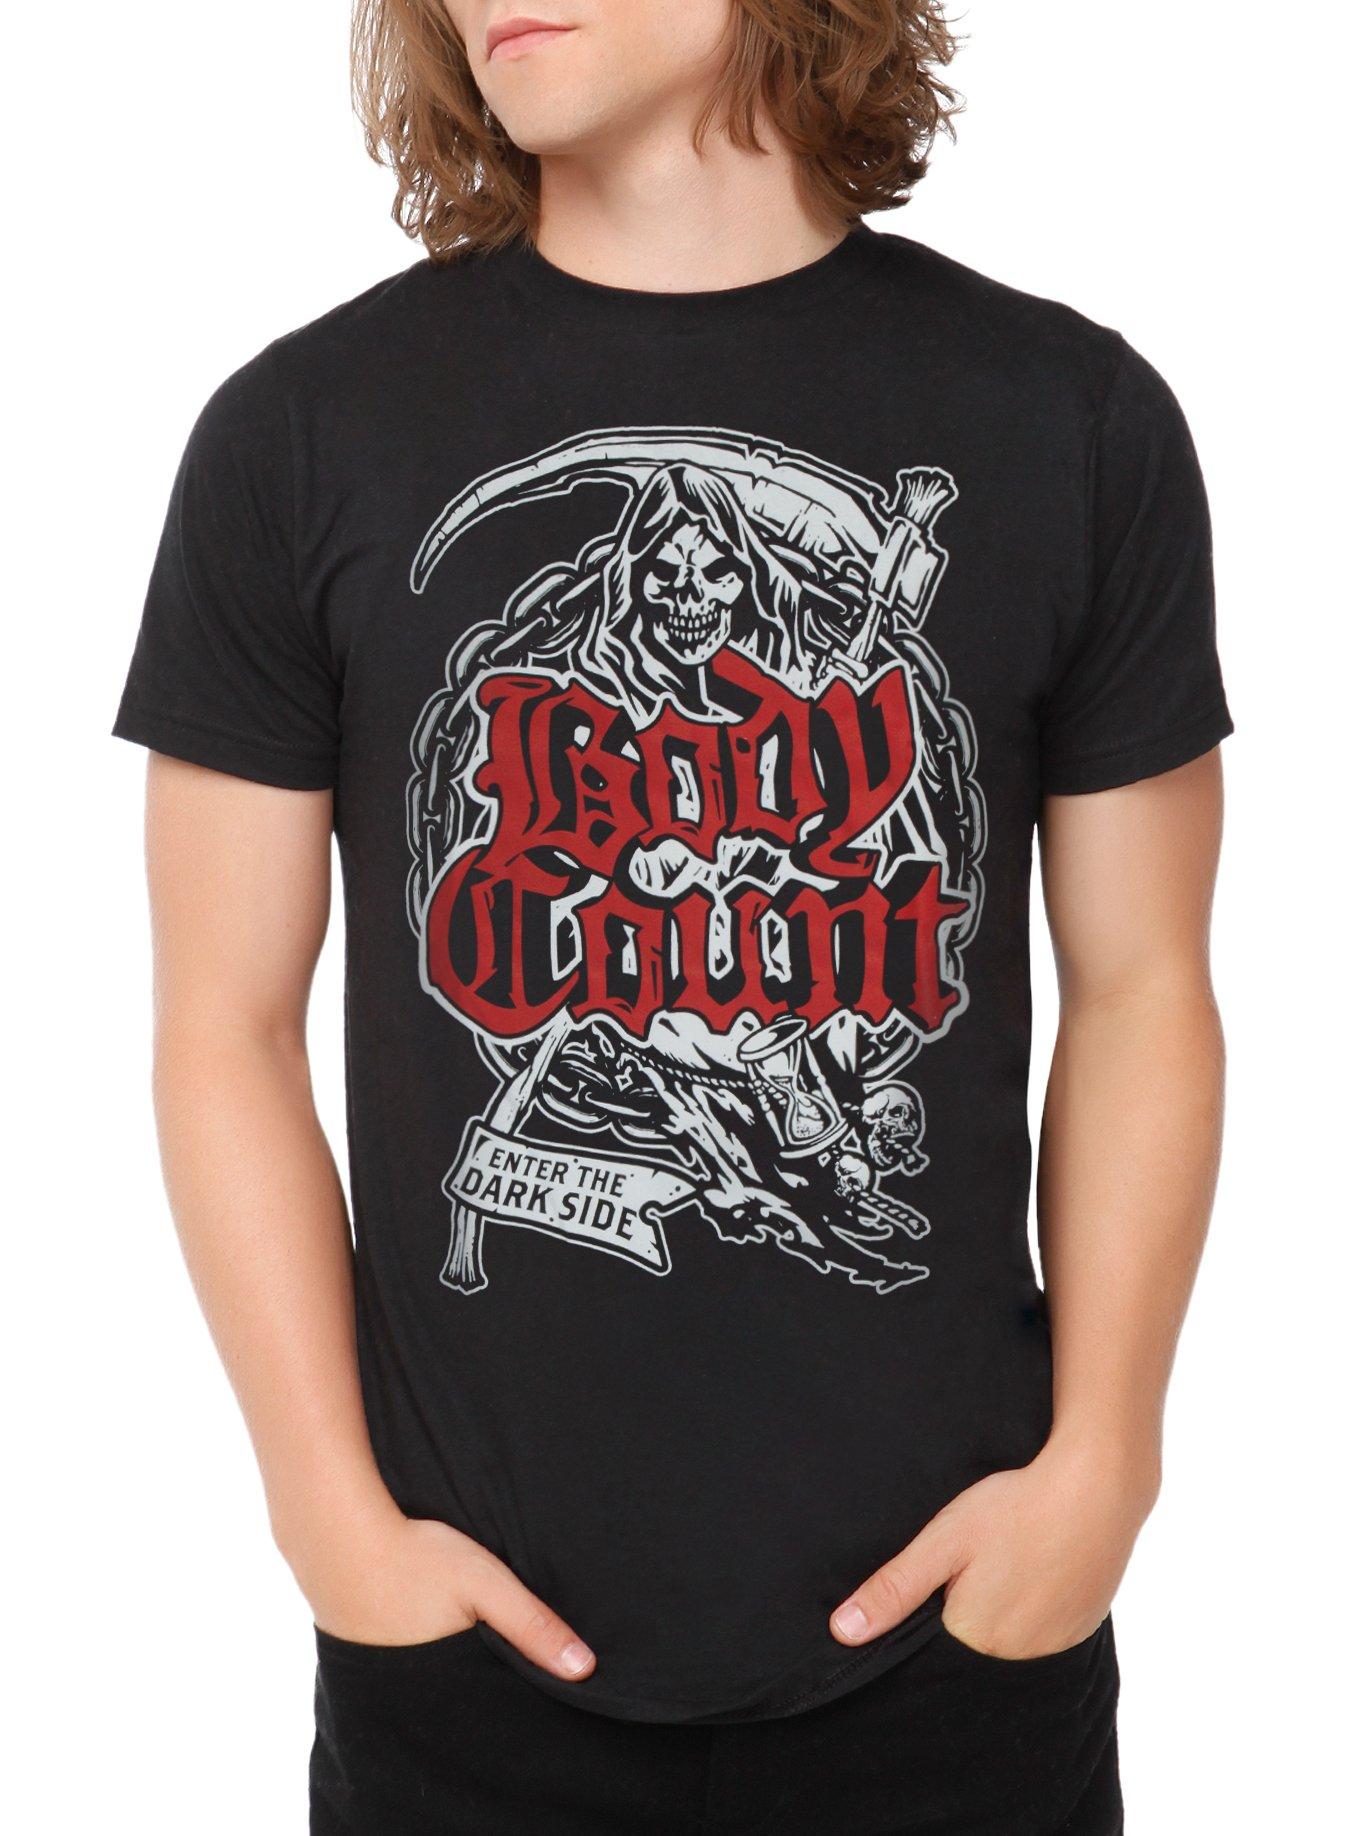 Body Count Reaper T-Shirt, BLACK, hi-res